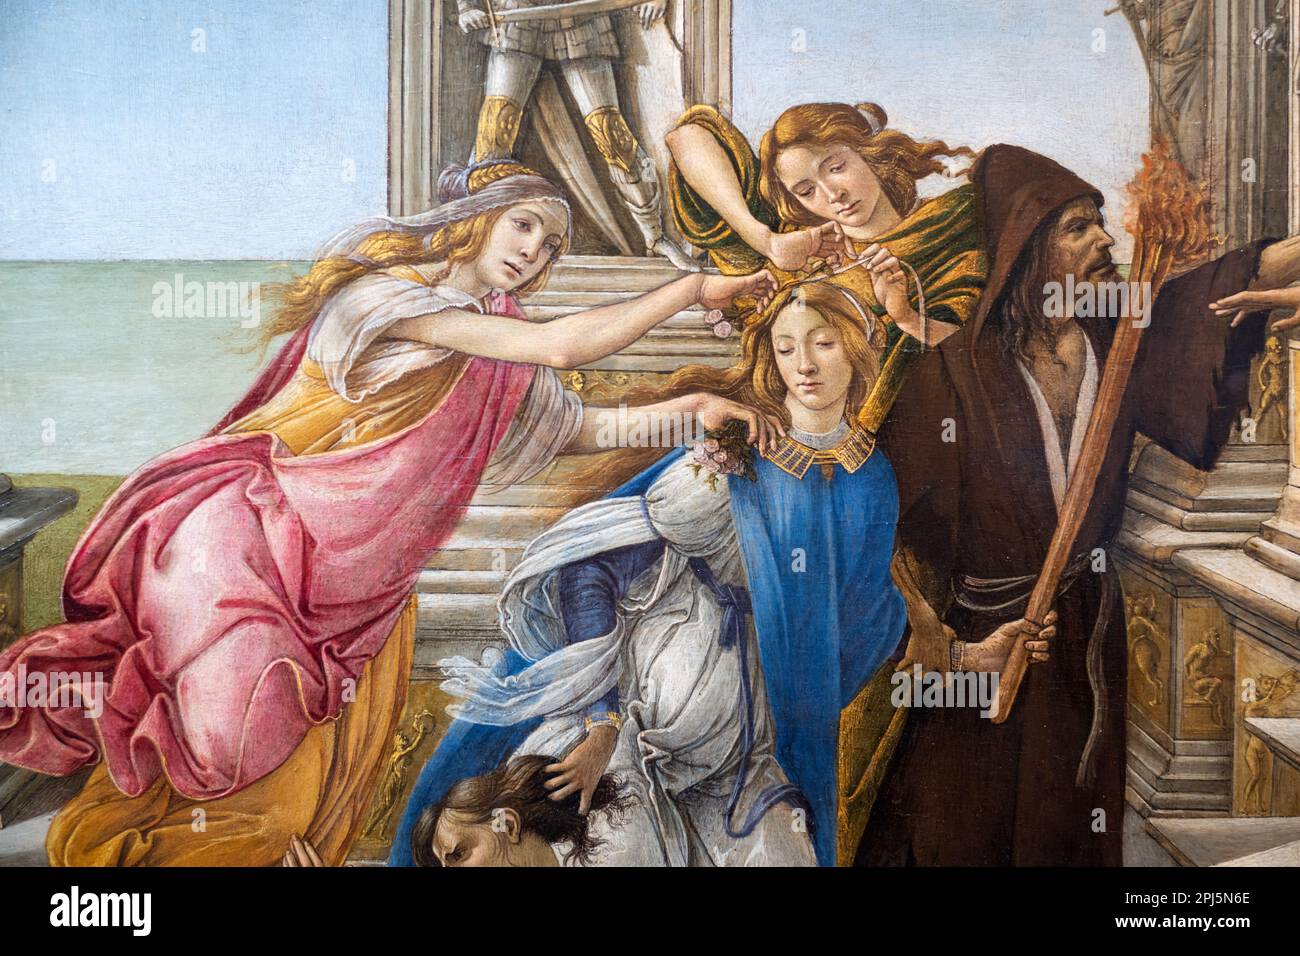 Détails de la « calomnie des Apelles » de Botticelli, 1494–95, dans les Offices, Florence Banque D'Images